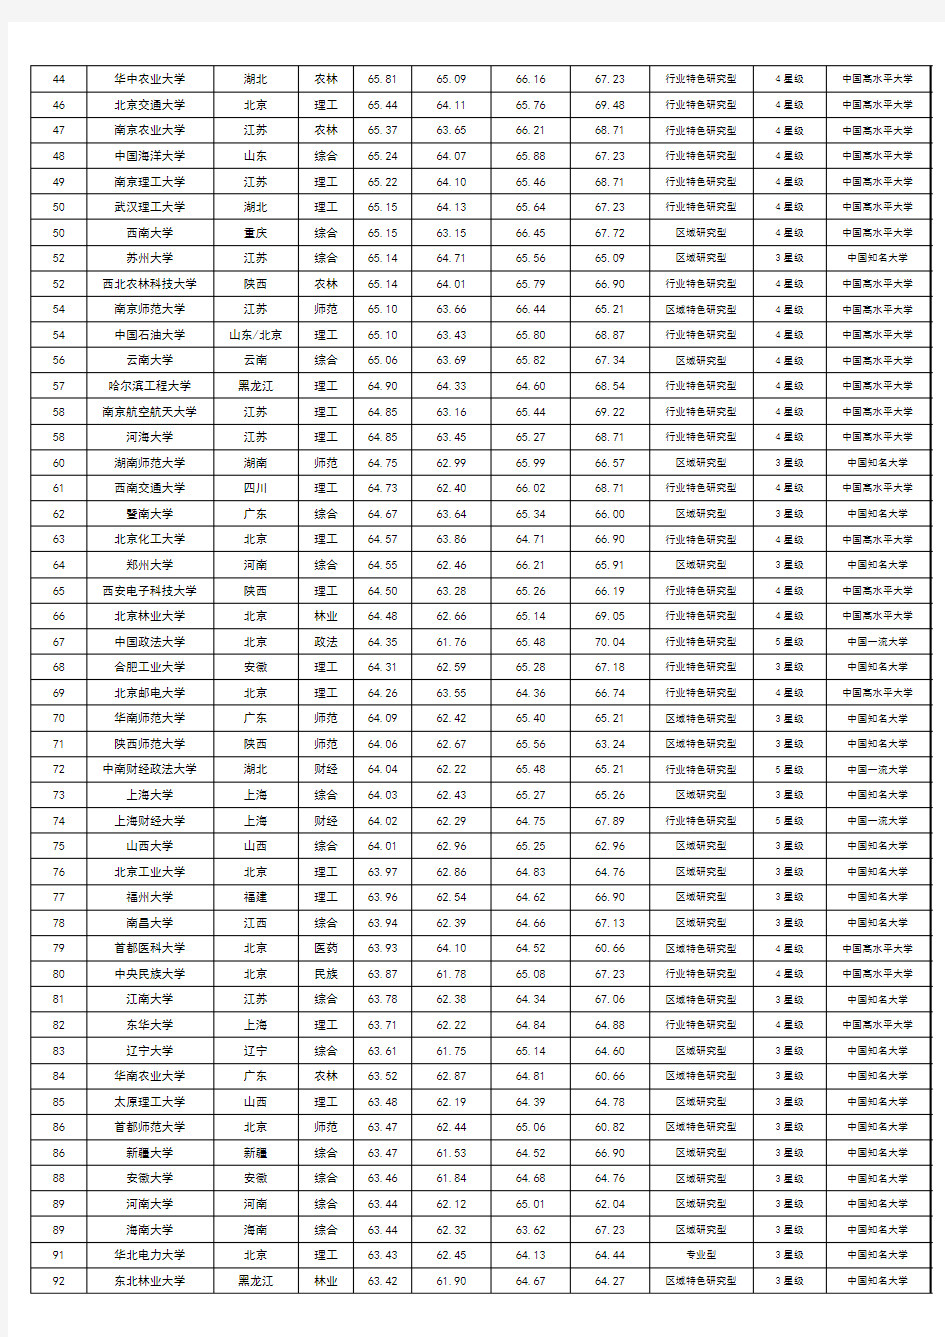 2014年中国大学综合排名100强一览表(2013年统计)